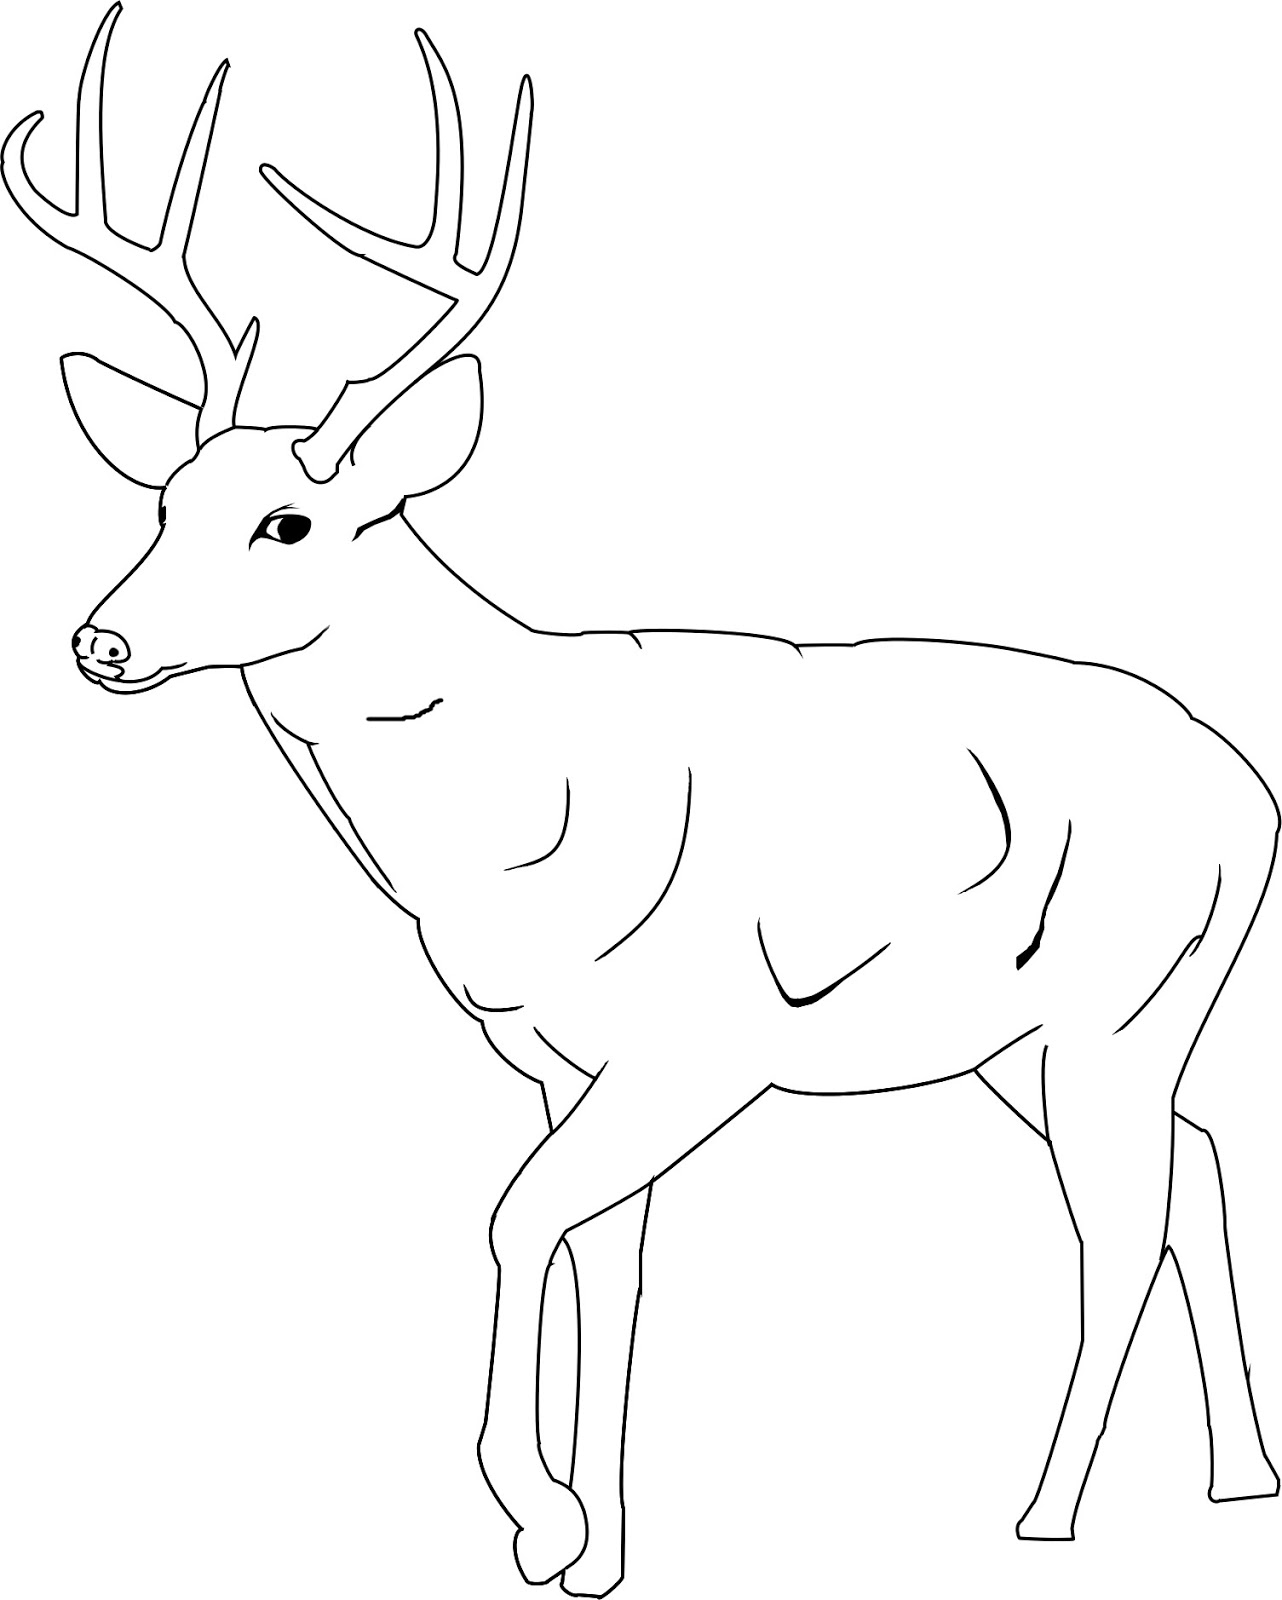 Deer Antler Coloring Pages at Free printable